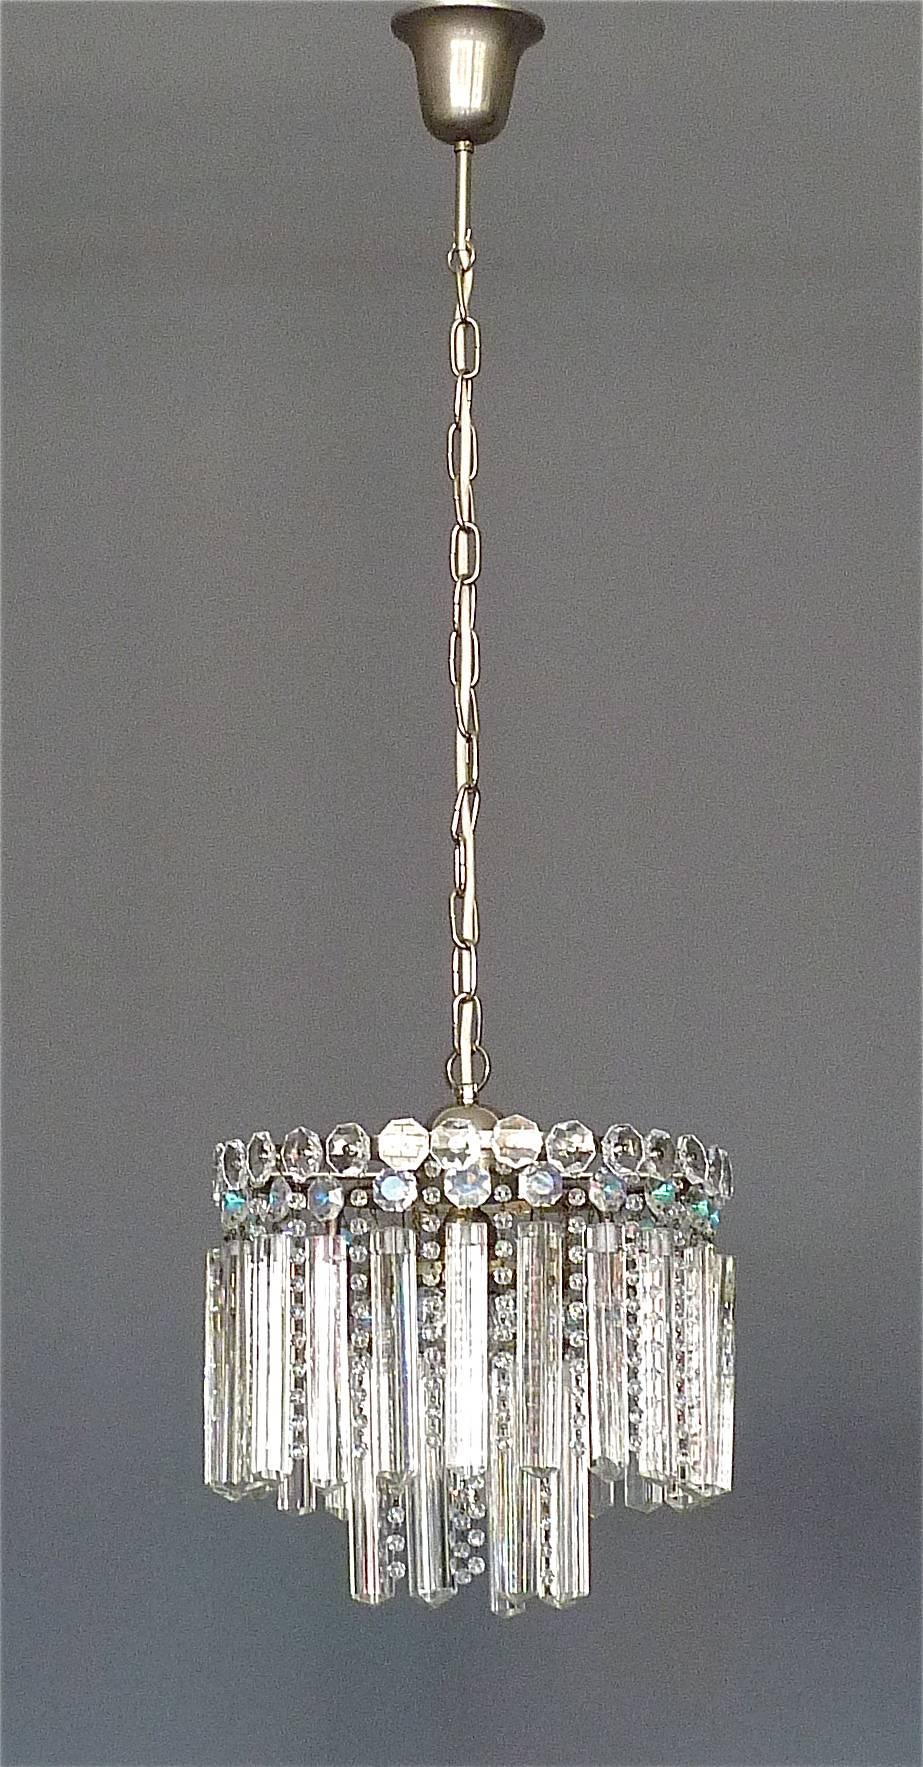 Kostbarer Luster aus facettiertem Kristallglas von Lobmeyr oder Bakalowits, Wien, Österreich, um 1950. Der an einer Kette hängende, in der Länge verstellbare, zweistöckige Kronleuchter hat dreiseitige, längliche, handgeschliffene Kristallglasstäbe